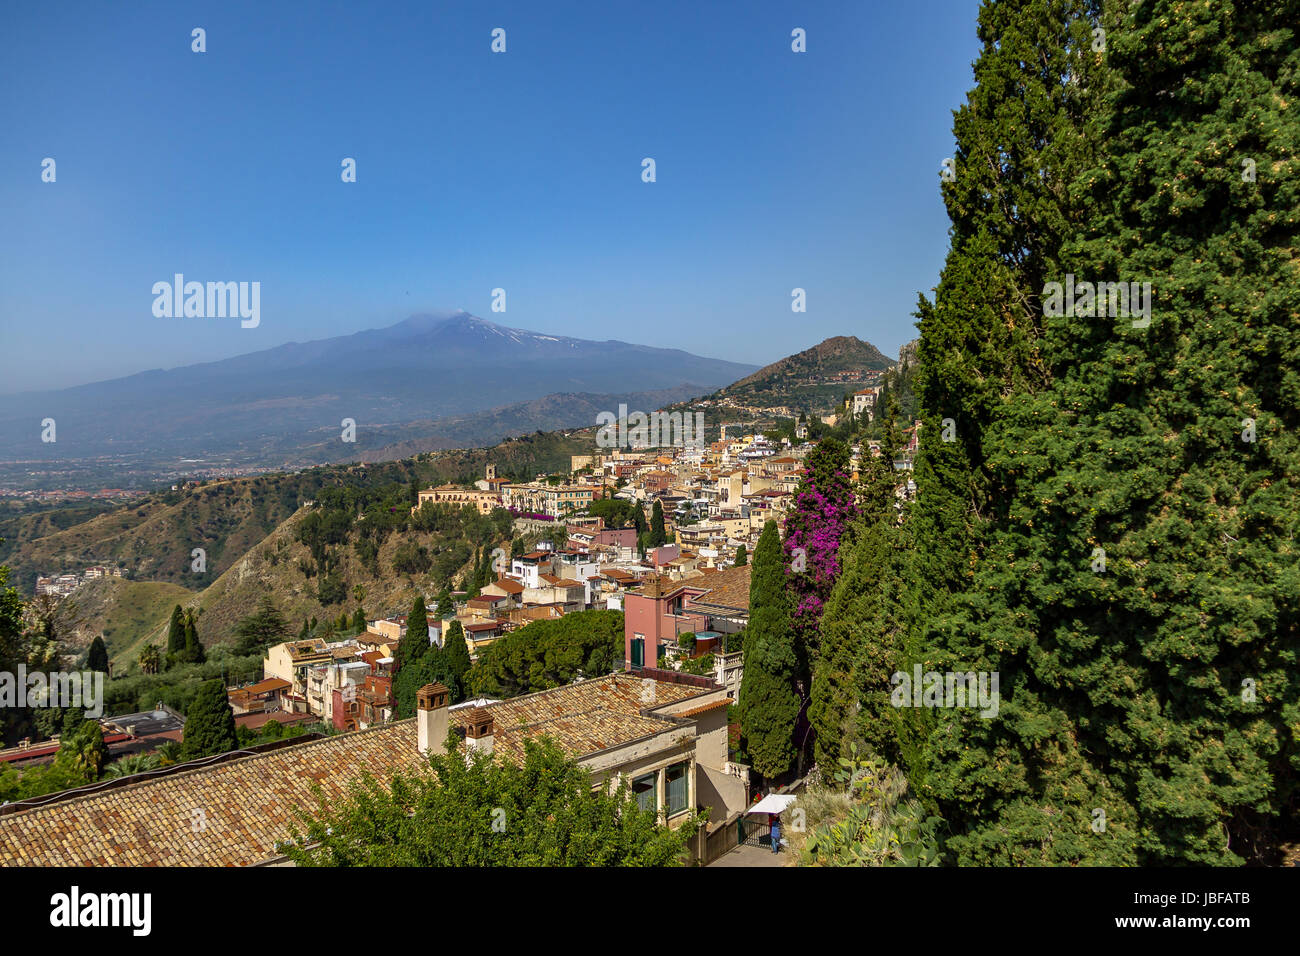 Vista aerea della città di Taormina e del monte Etna - Taormina, Sicilia, Italia Foto Stock